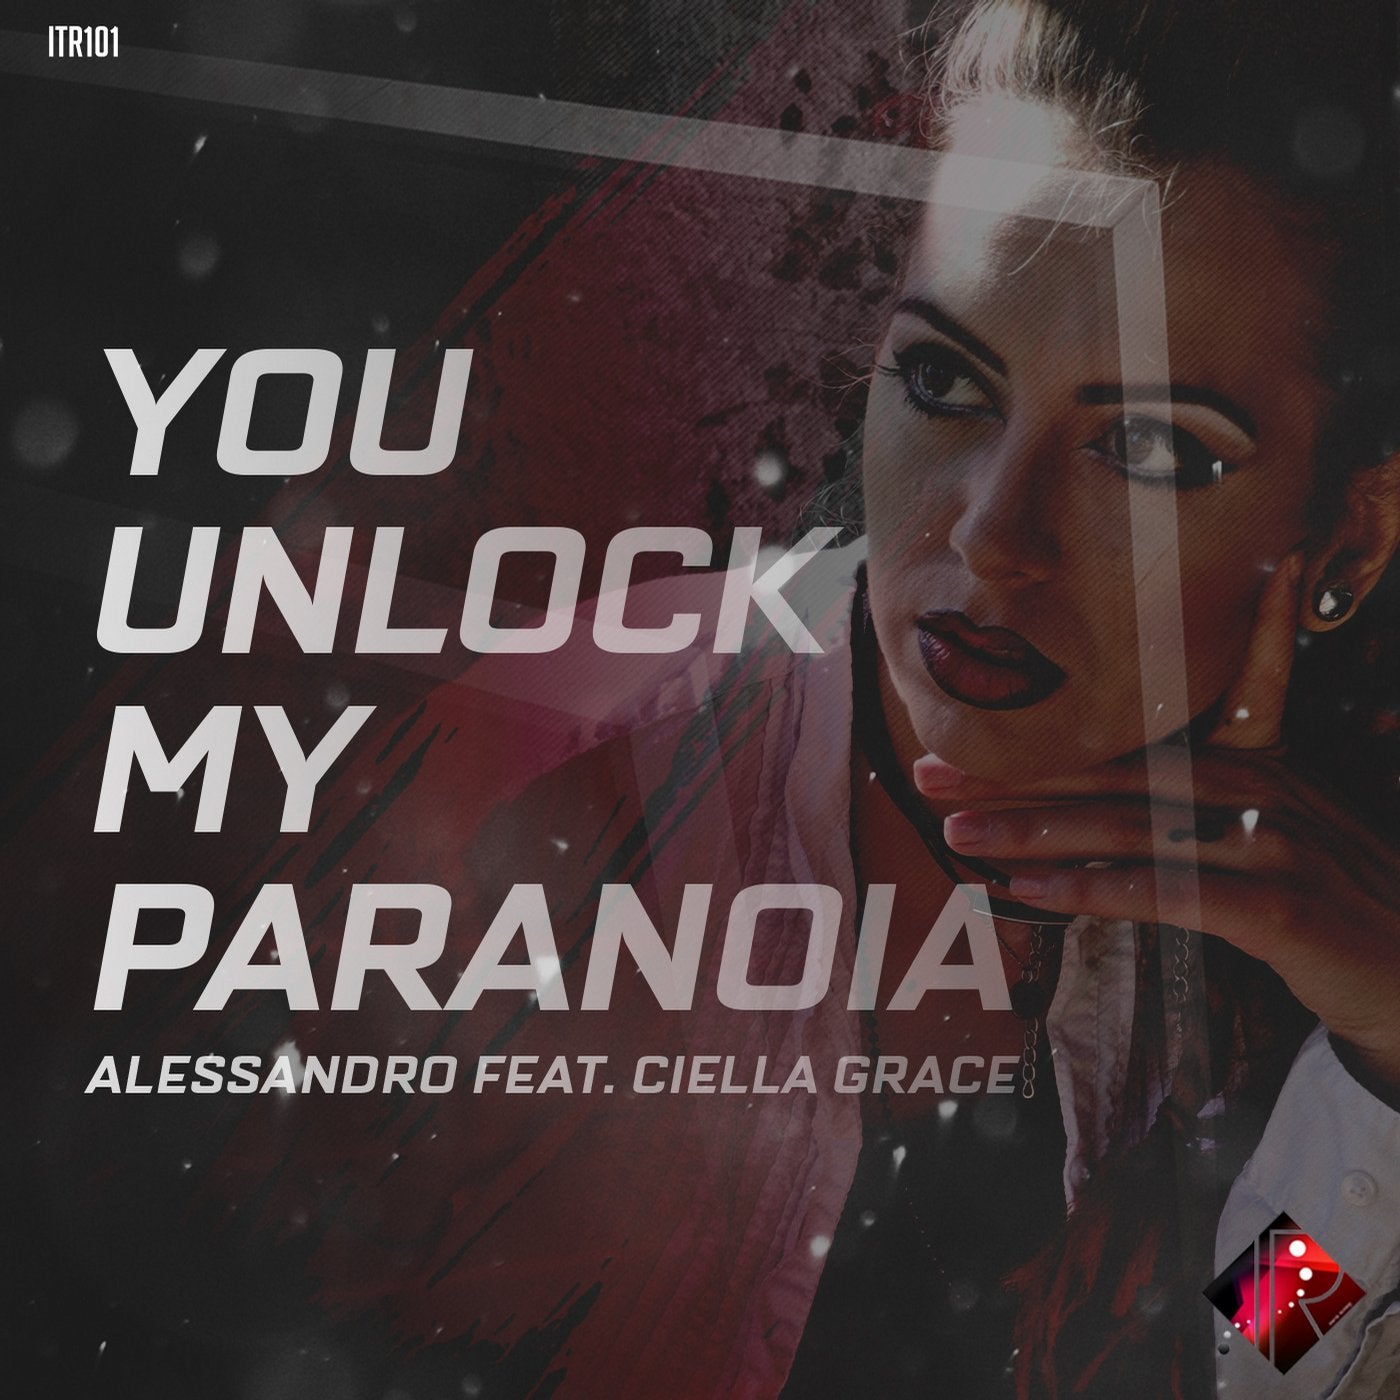 You Unlock My Paranoia